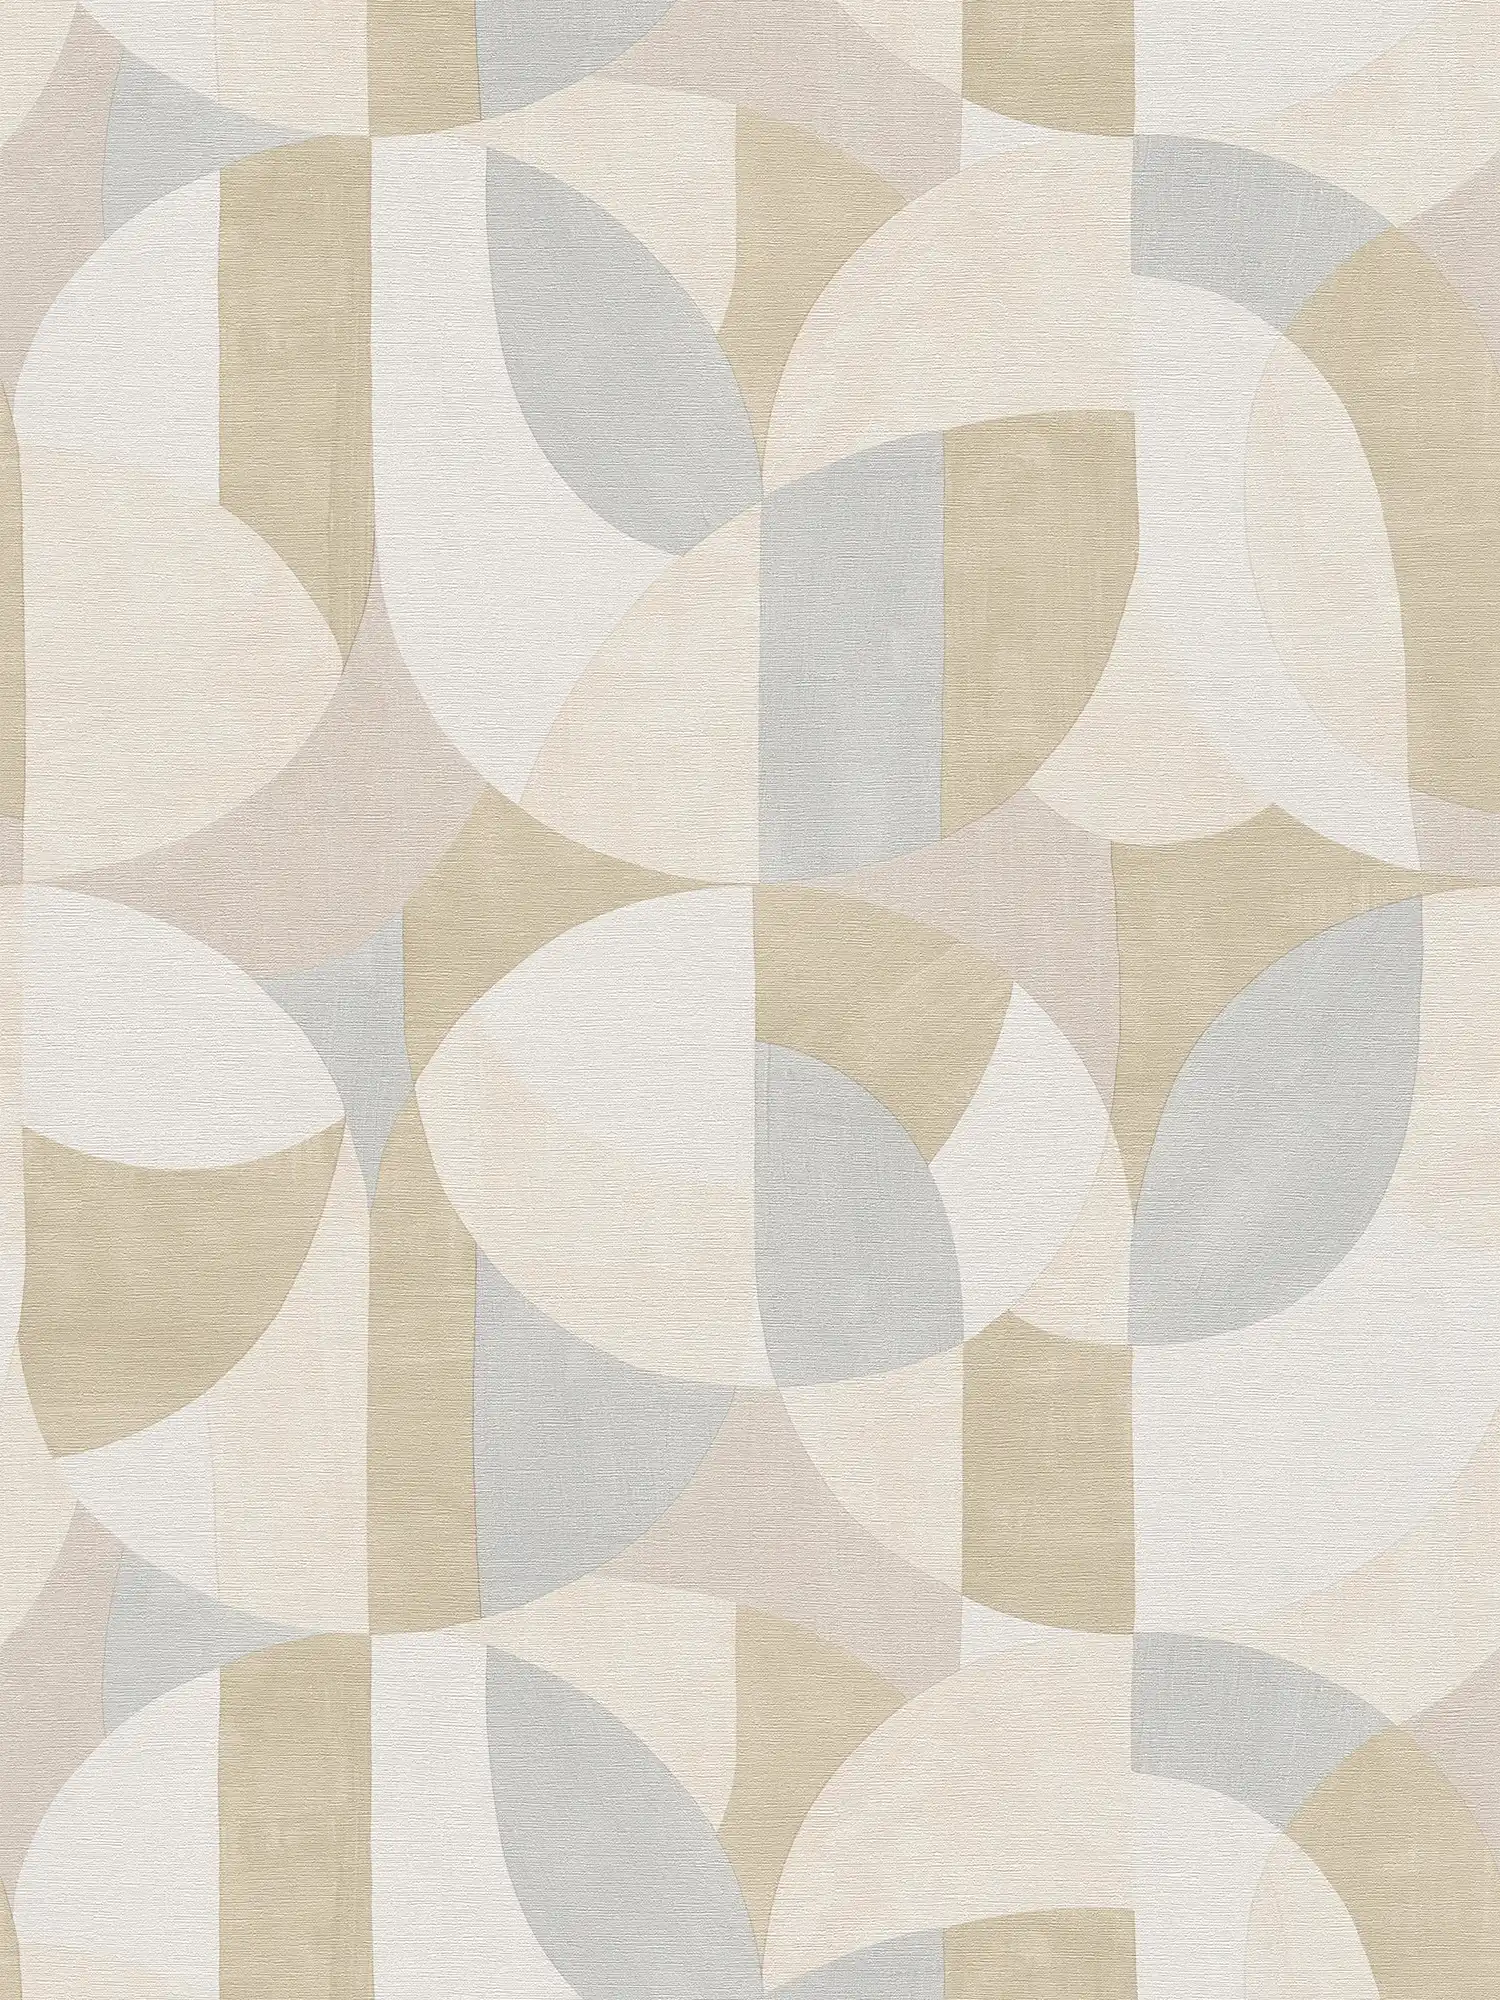         papier peint en papier graphique abstrait intissé style Bauhaus - gris, crème, beige
    